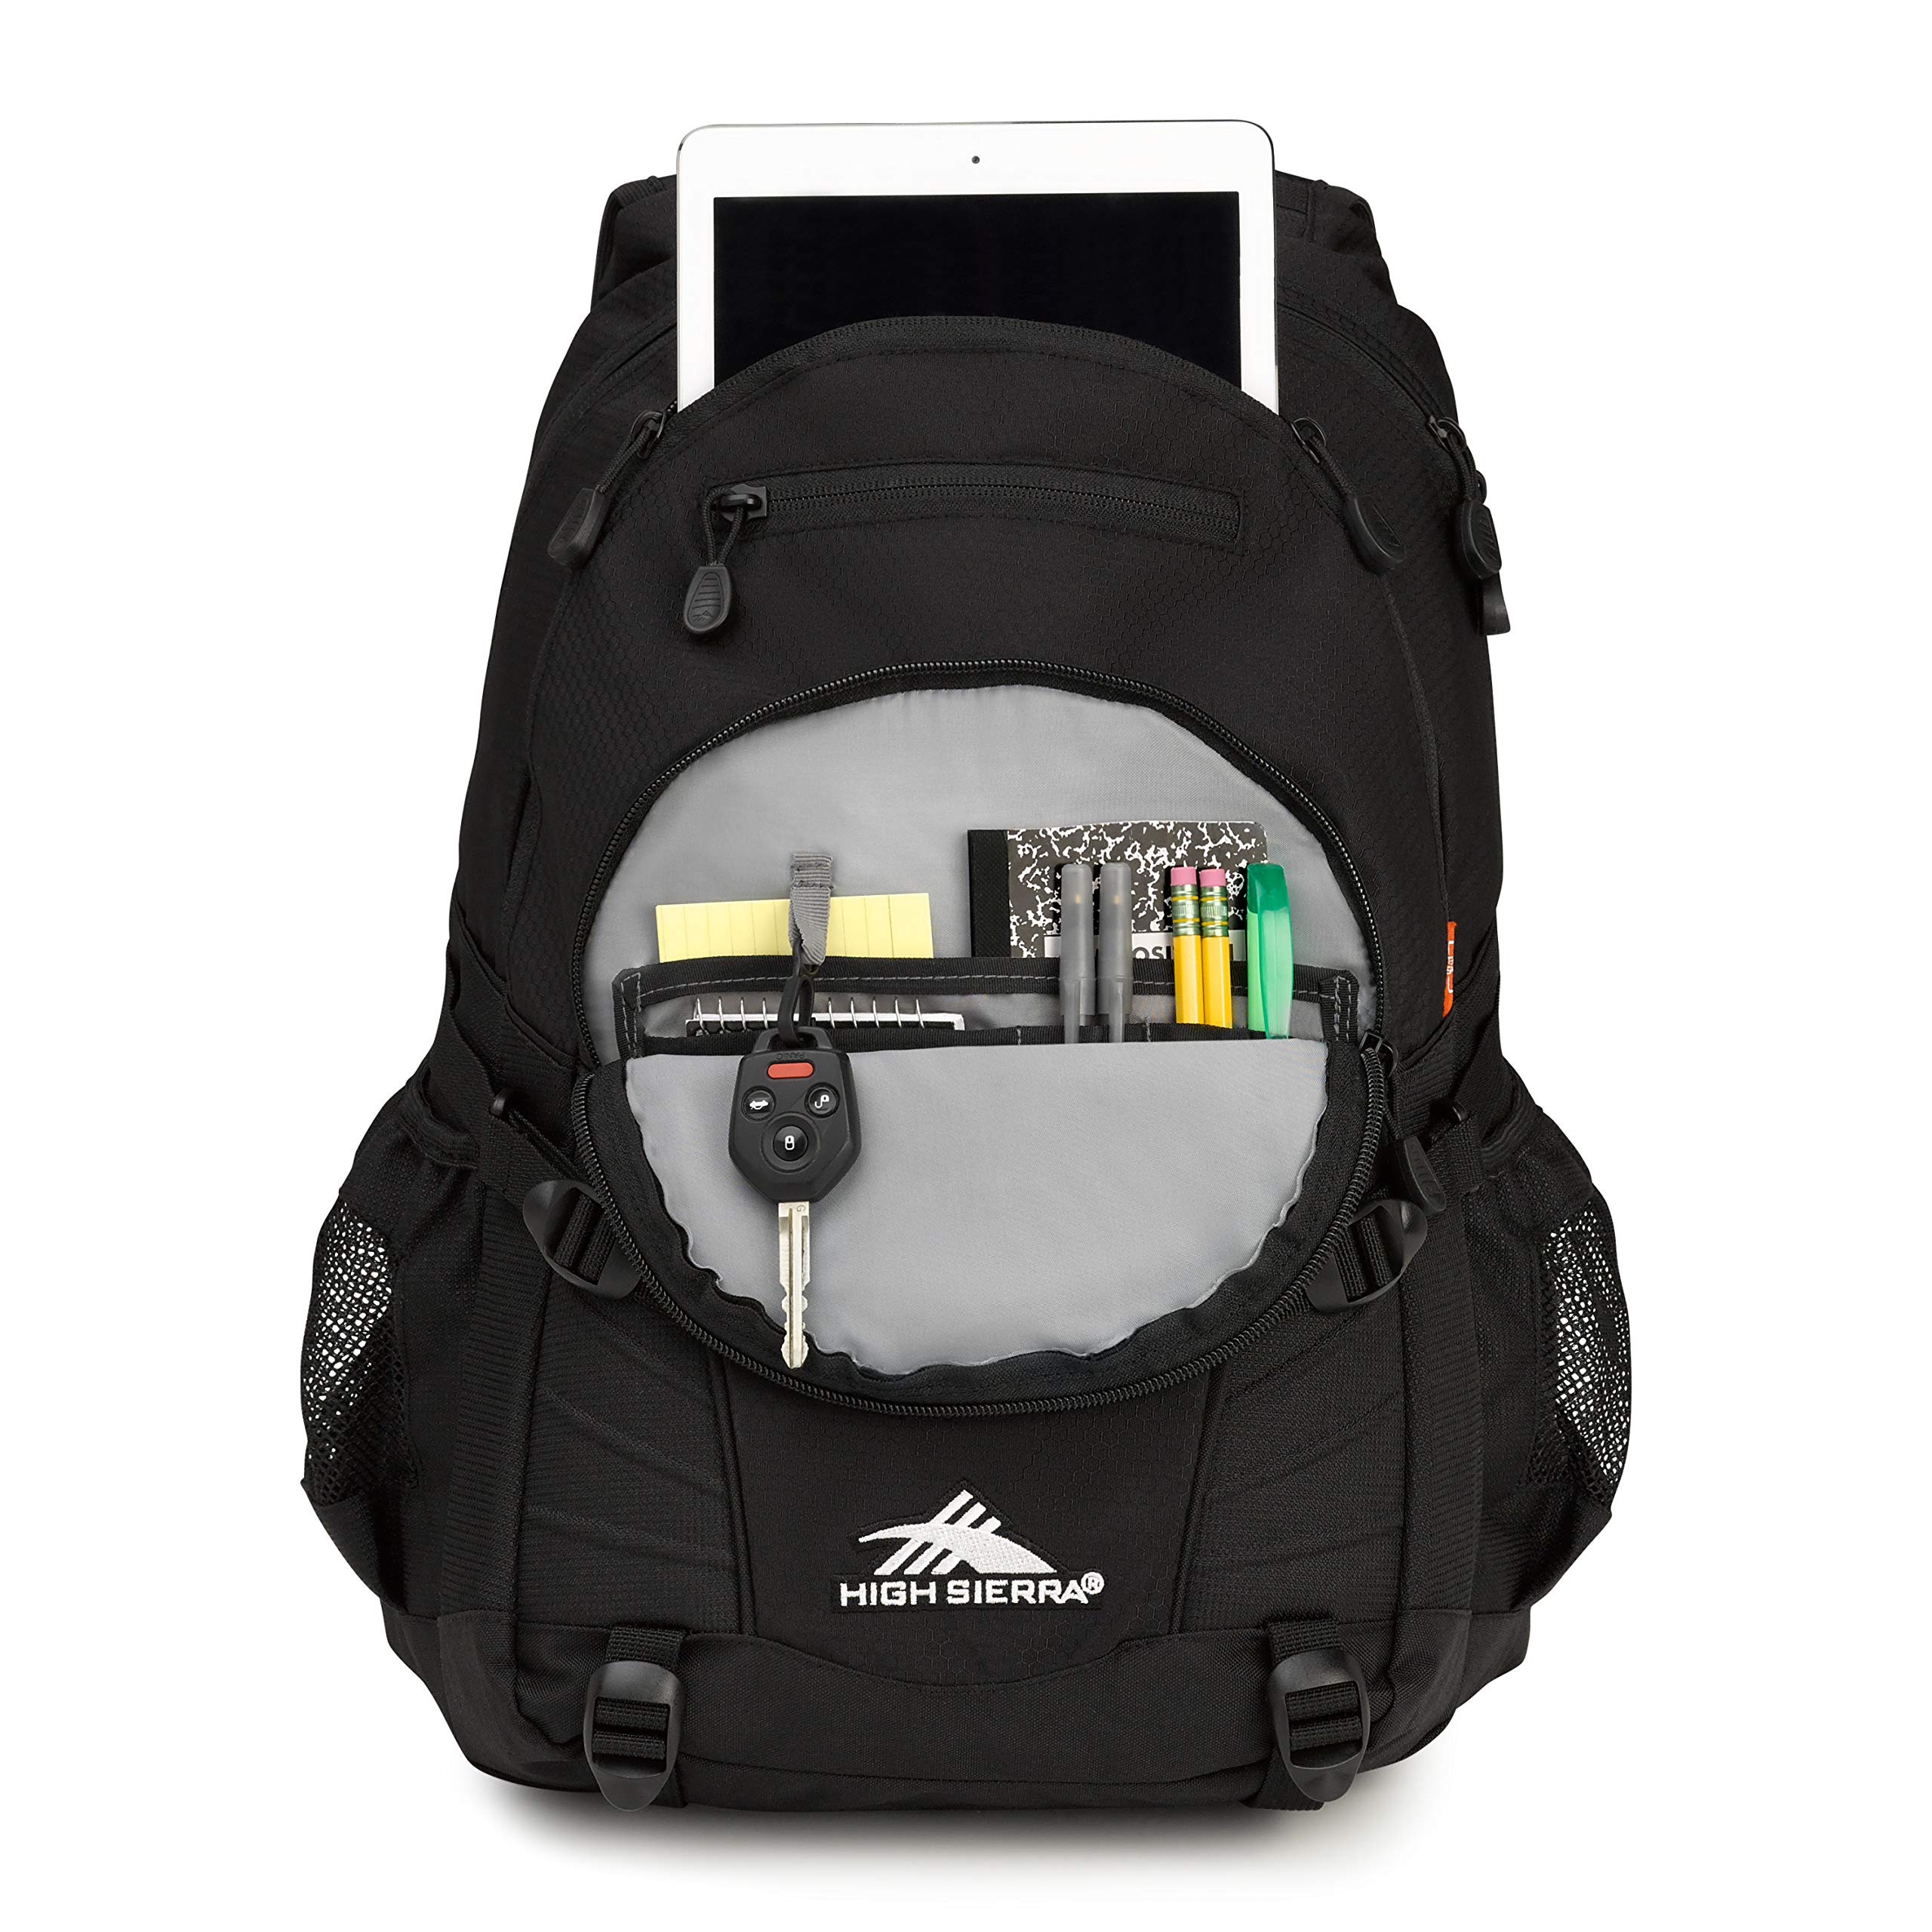 High Sierra Loop Backpack, Travel, or Work Bookbag with tablet sleeve, One Size, Black